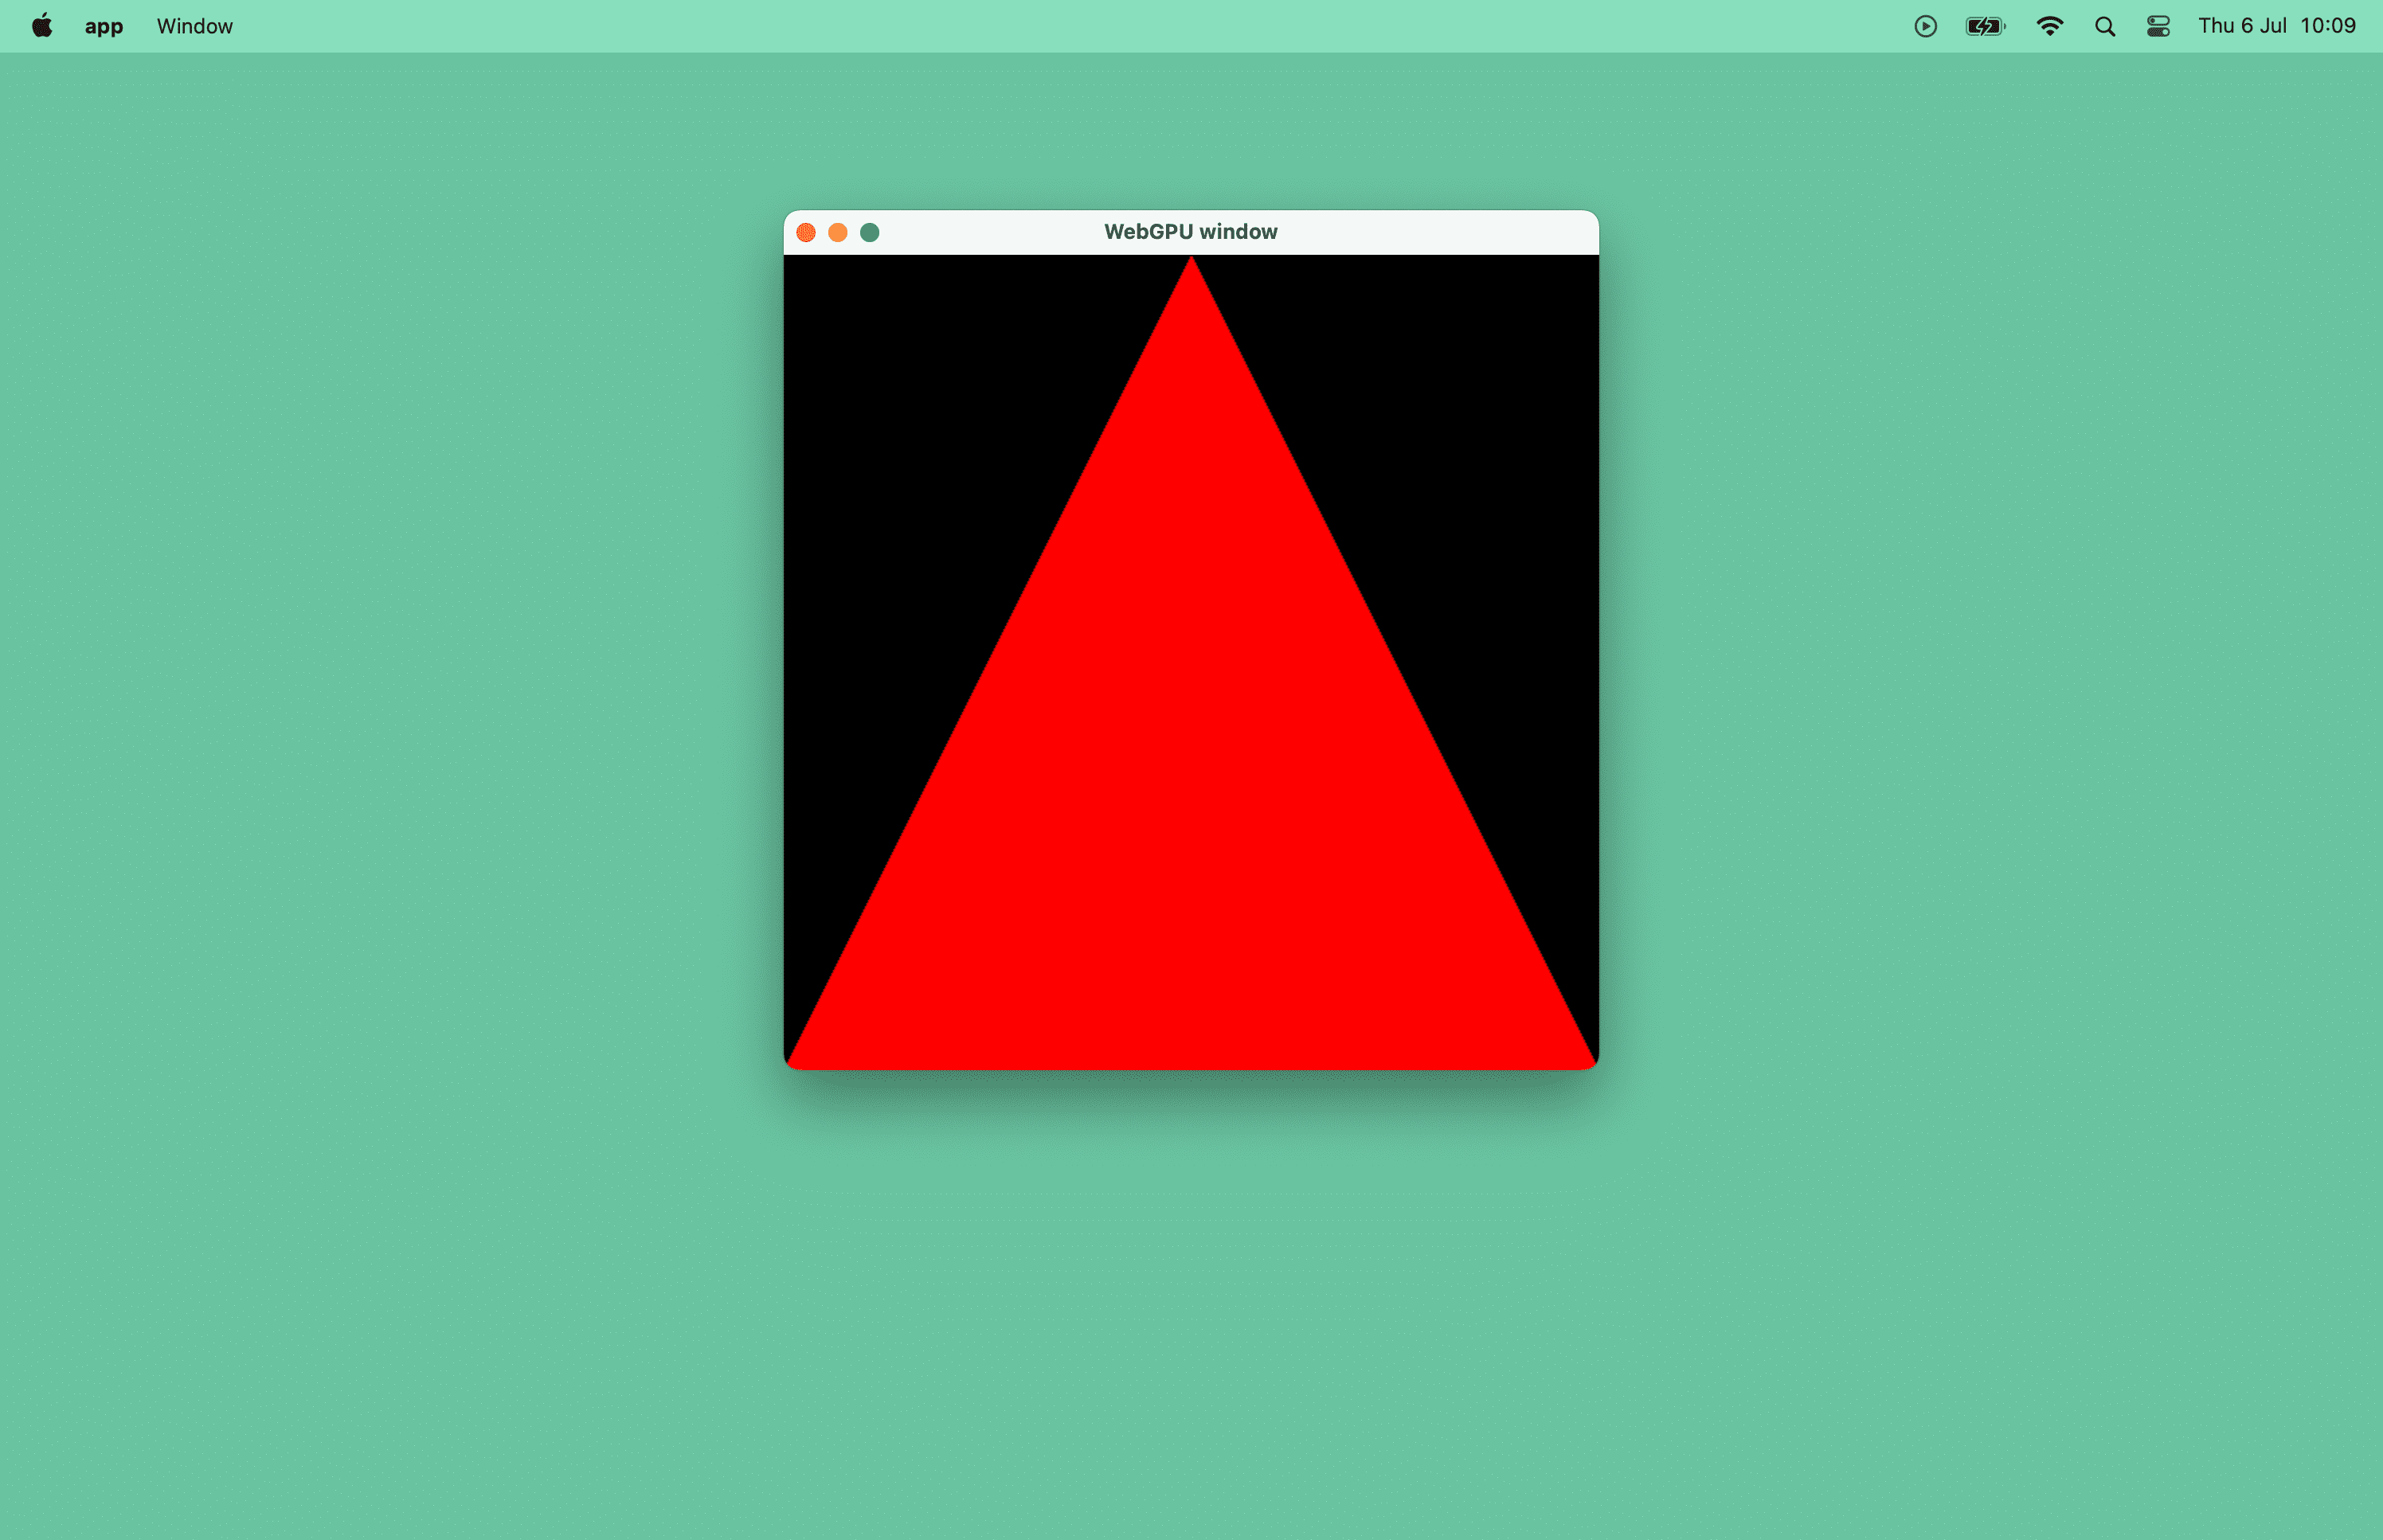 macOS 窗口中红色三角形的屏幕截图。